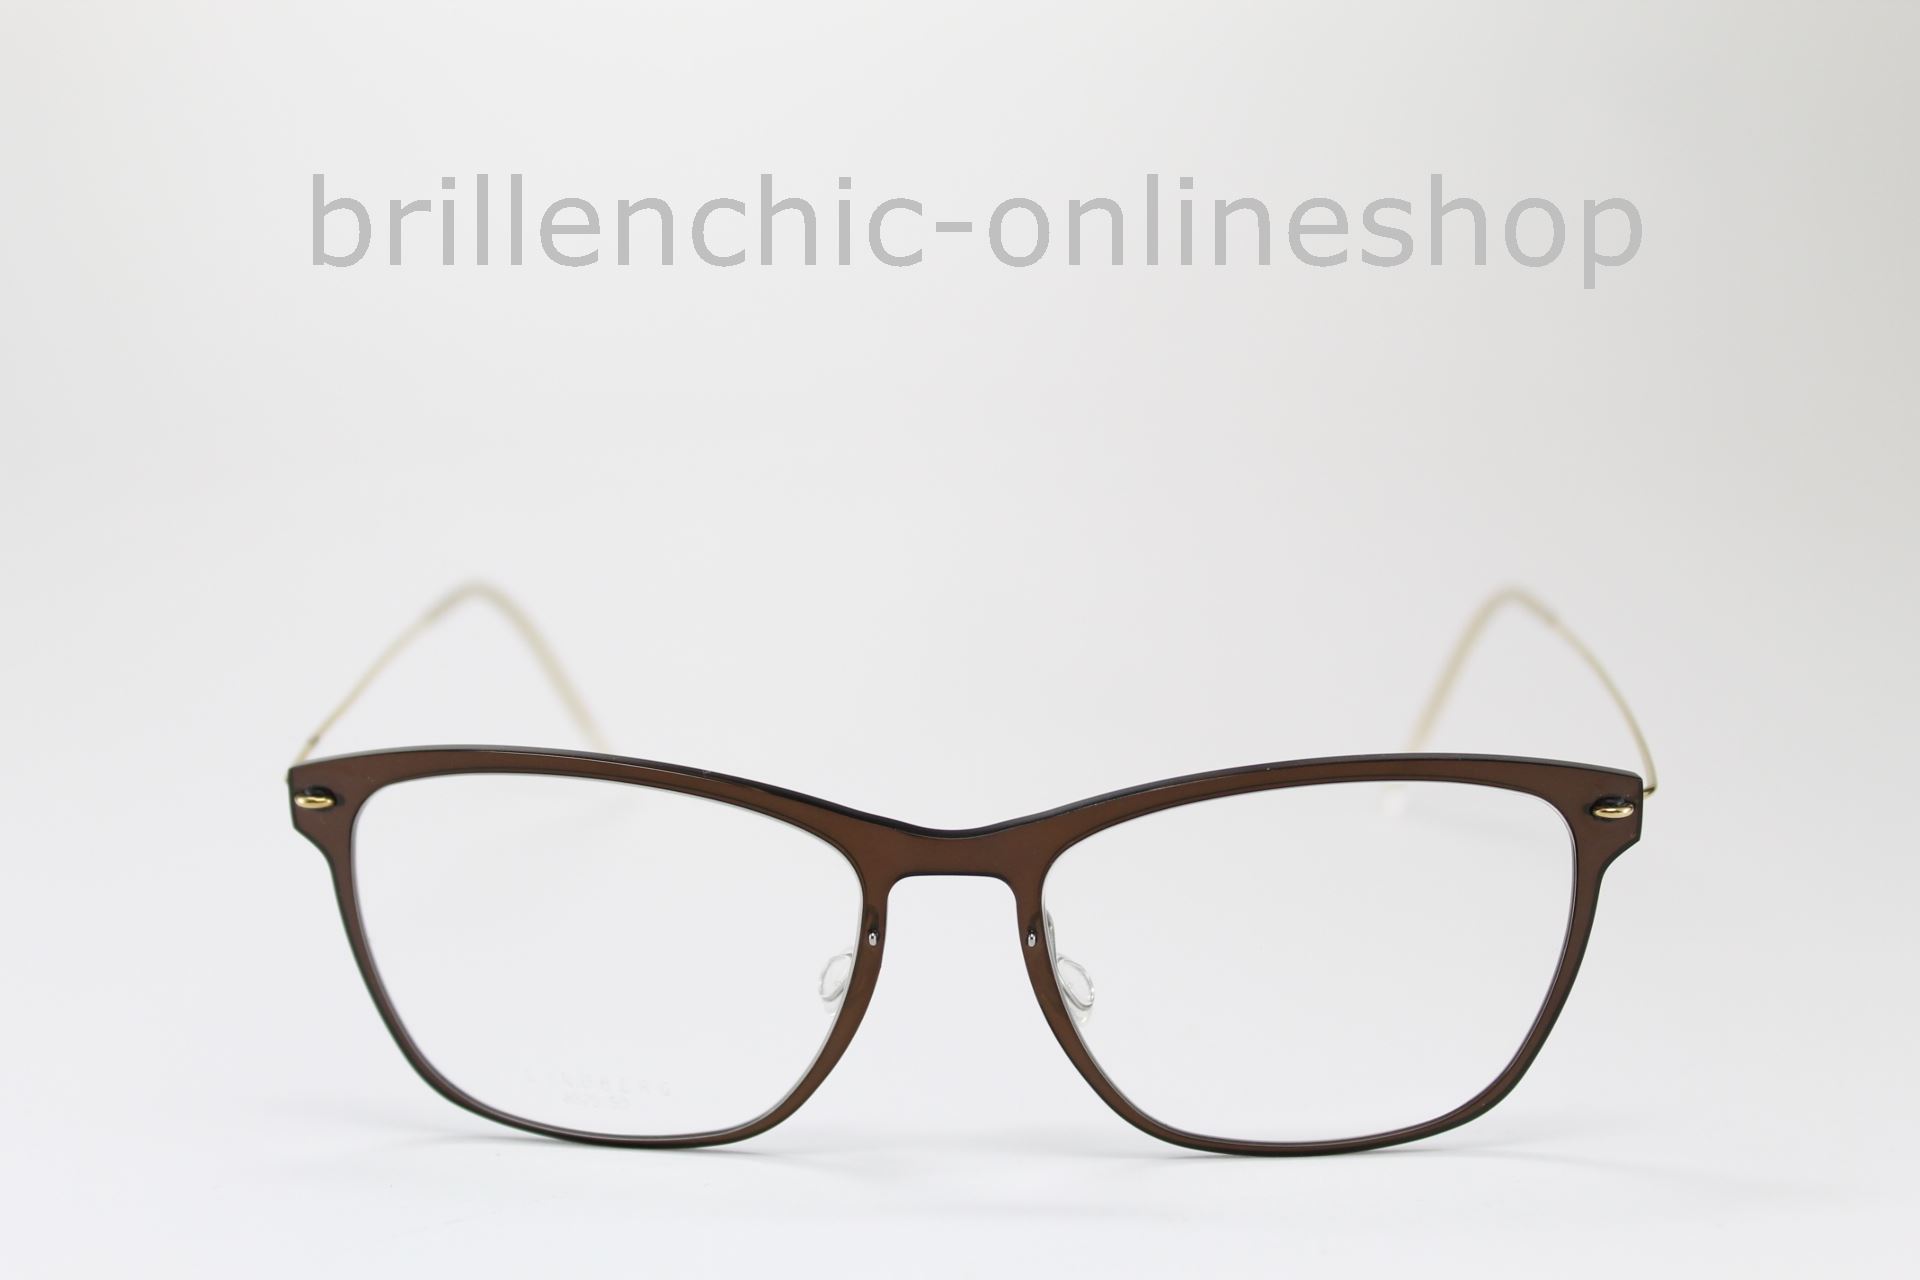 flugt Calibre Lure Brillenchic - onlineshop Berlin Ihr starker Partner für exklusive Brillen  online kaufen/LINDBERG NOW 6525 C10 PGT TITANIUM exklusiv im  Brillenchic-Onlineshop